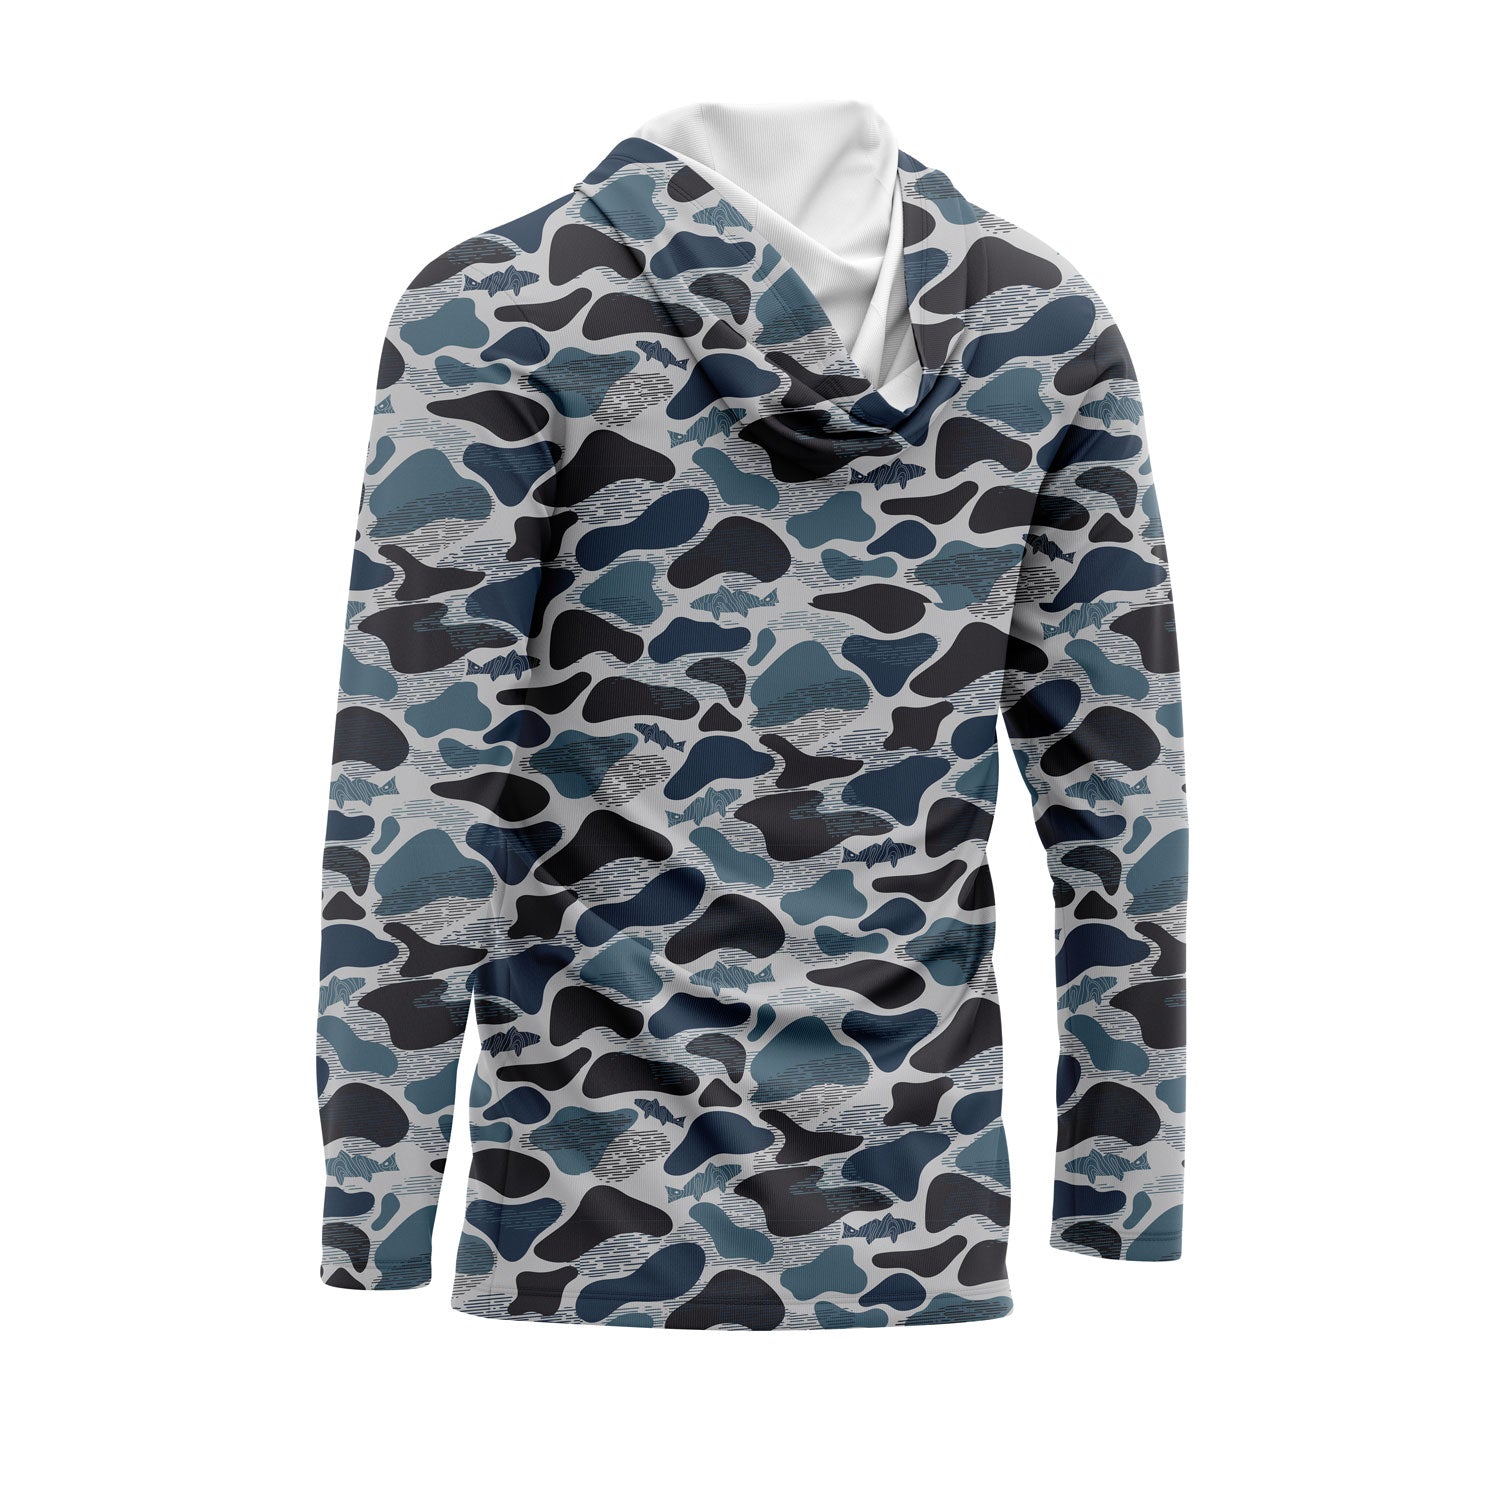 Performance Fishing Hoodie Shirt UPF 50+ (Blue Camo), L